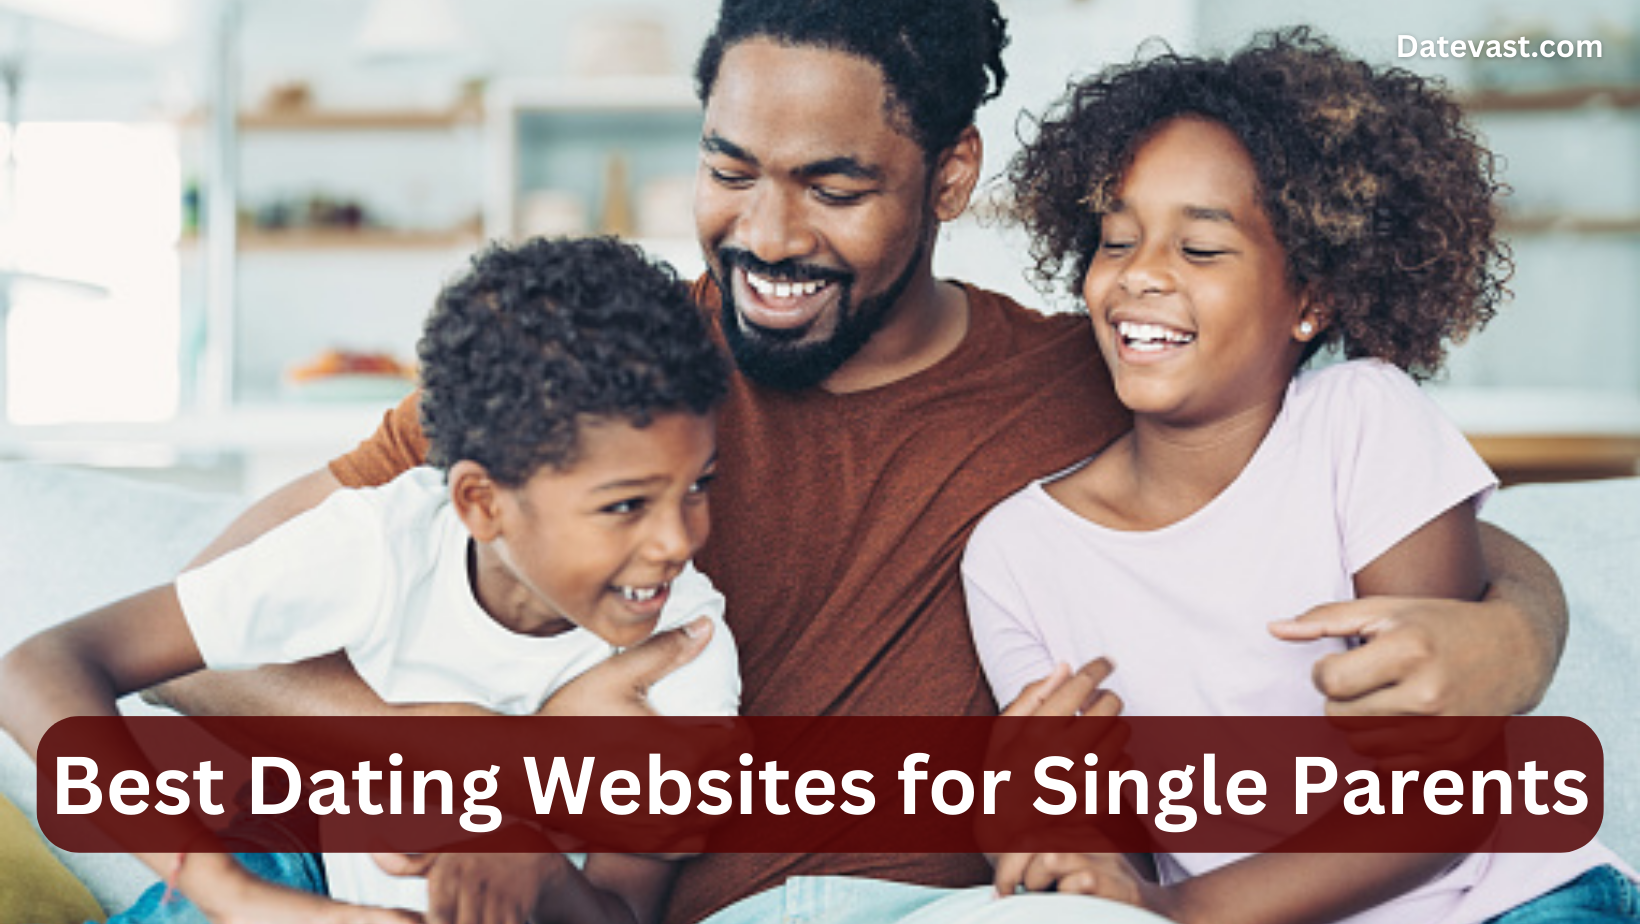 Best 20 Dating Websites for Single Parents